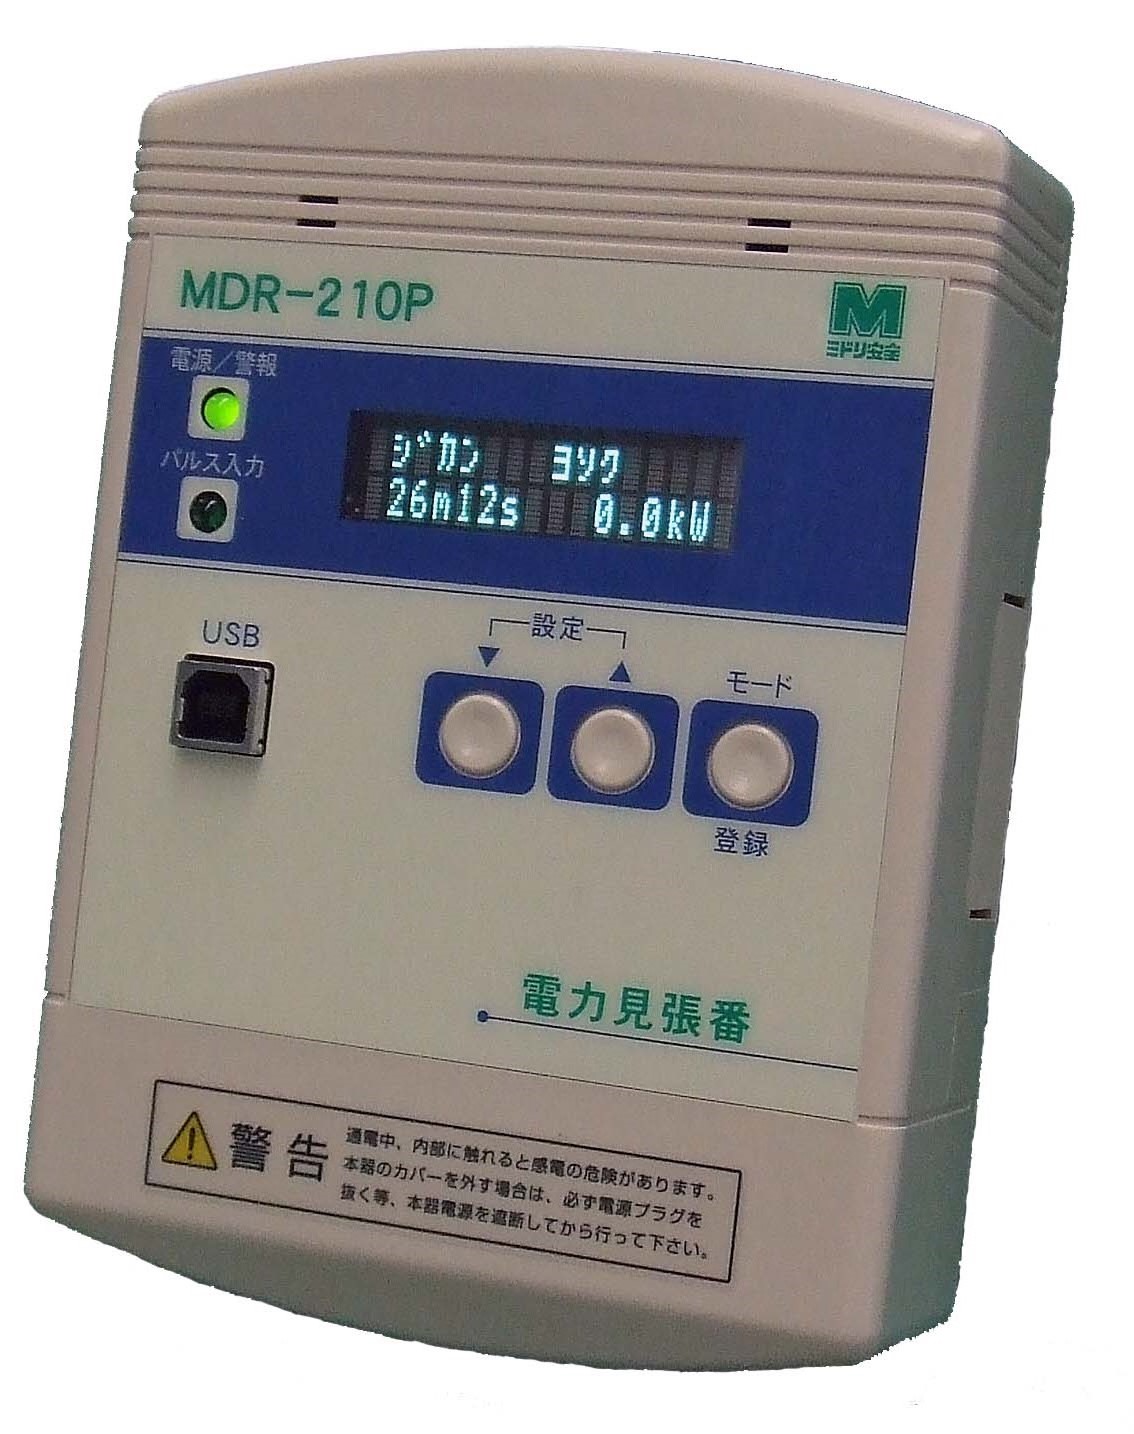 デマンド監視装置 MDR-210P